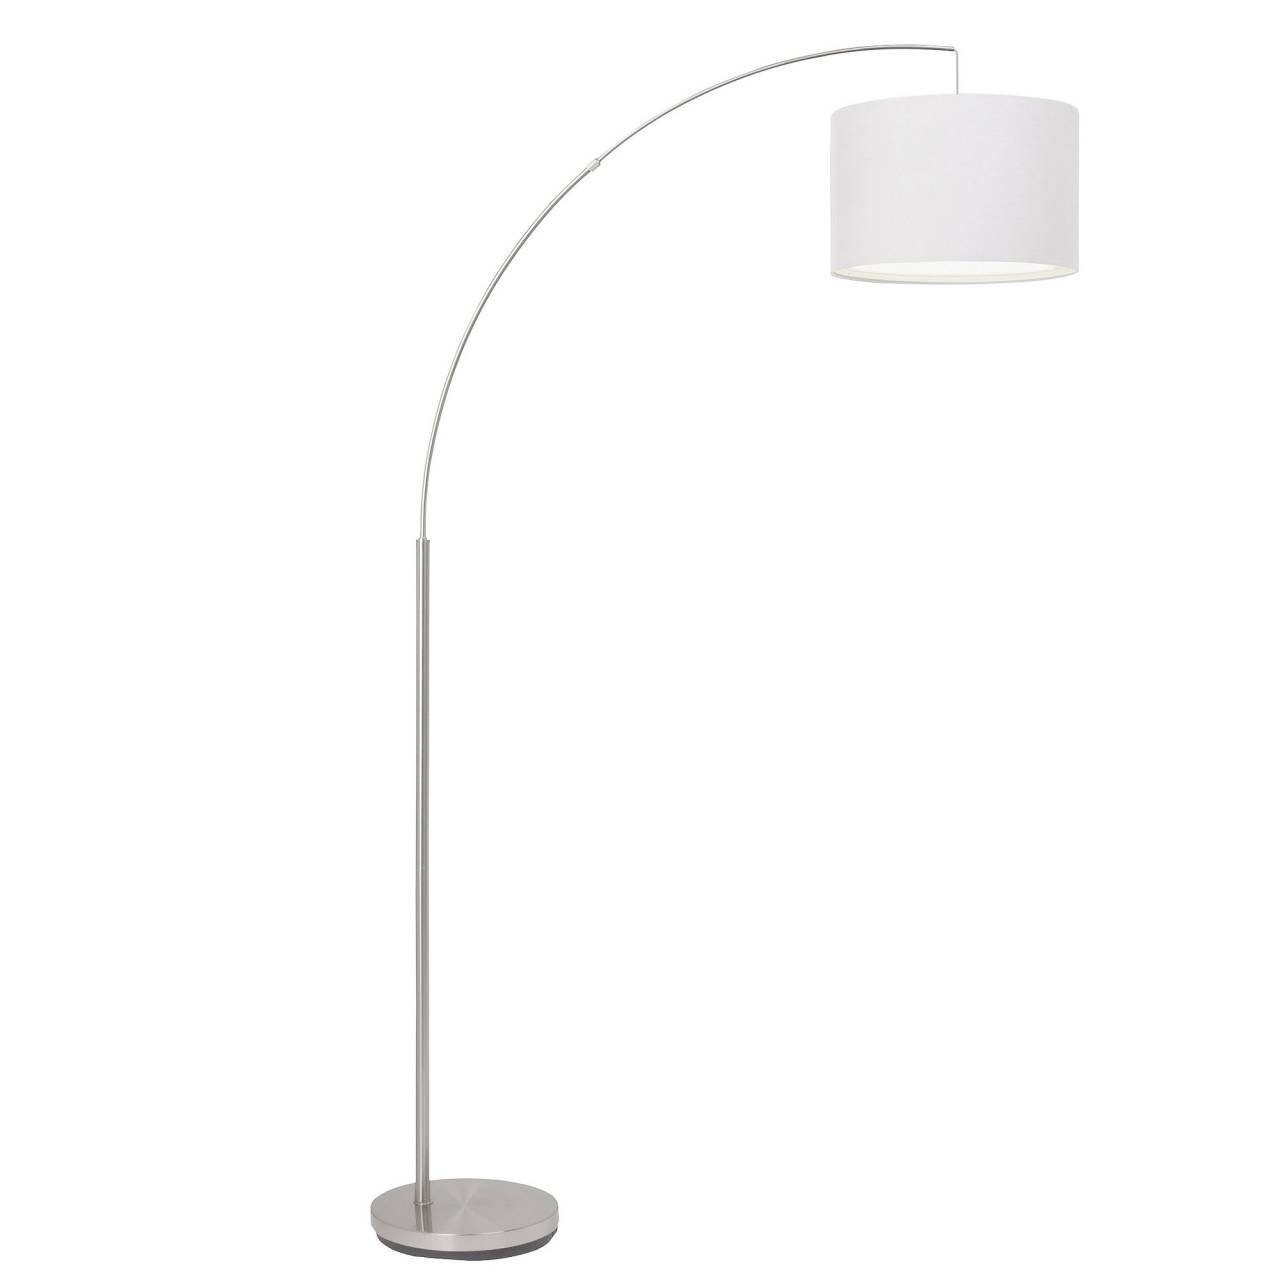 Bogenstandleuchte Lampe Brilliant Stehlampe 1x eisen/weiß gee E27, Clarie, Clarie 60W, A60, 1,8m